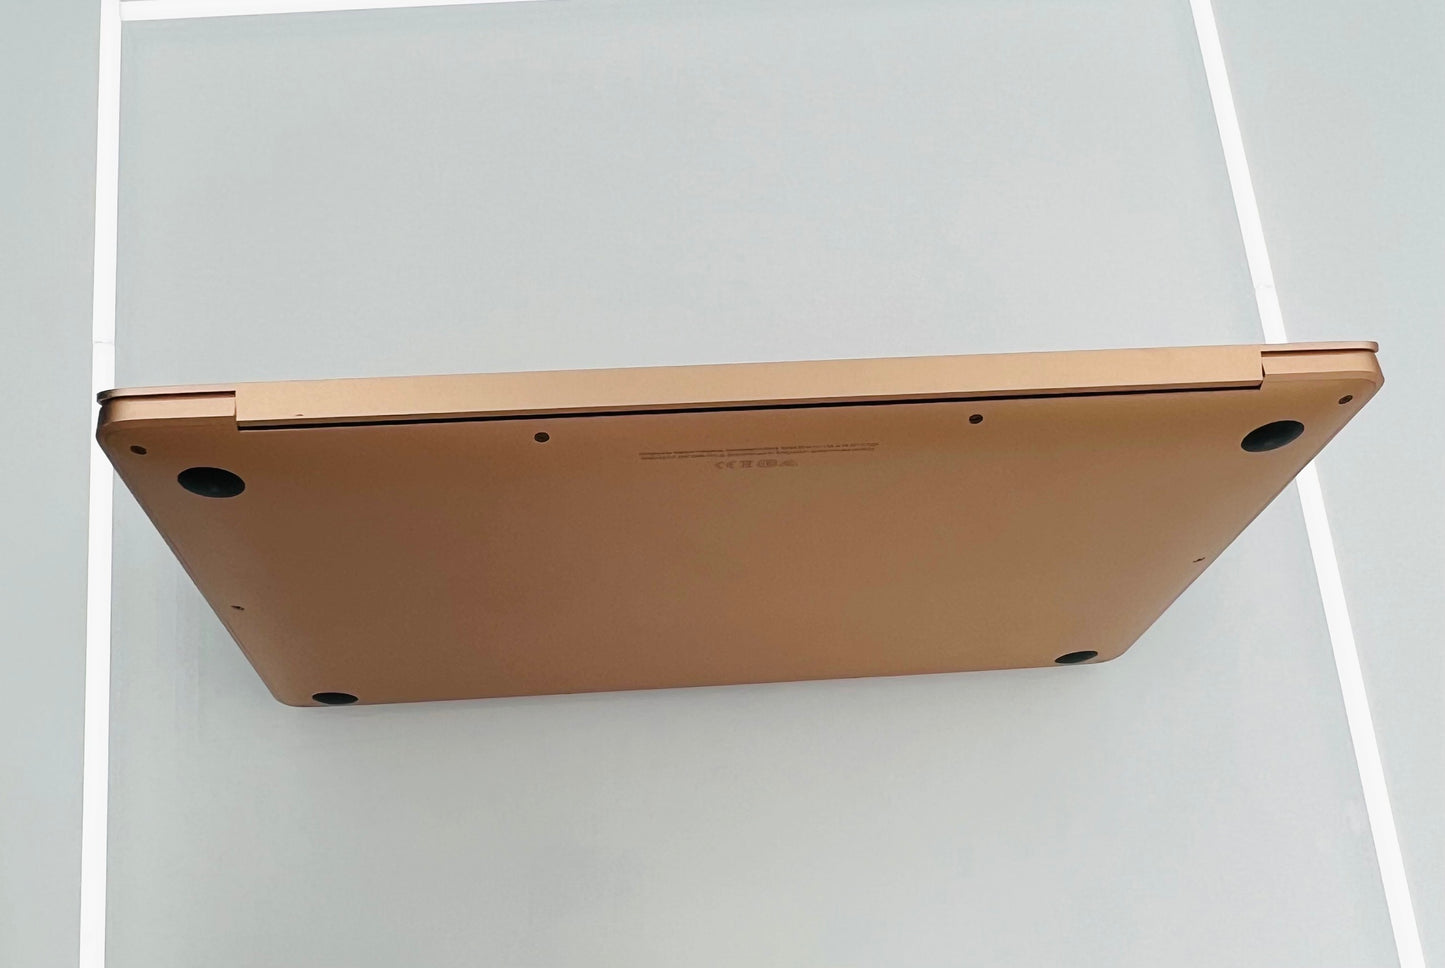 Macbook Air 2020 256gb Pin zin 96%, máy xước nhẹ, chưa qua thay sửa